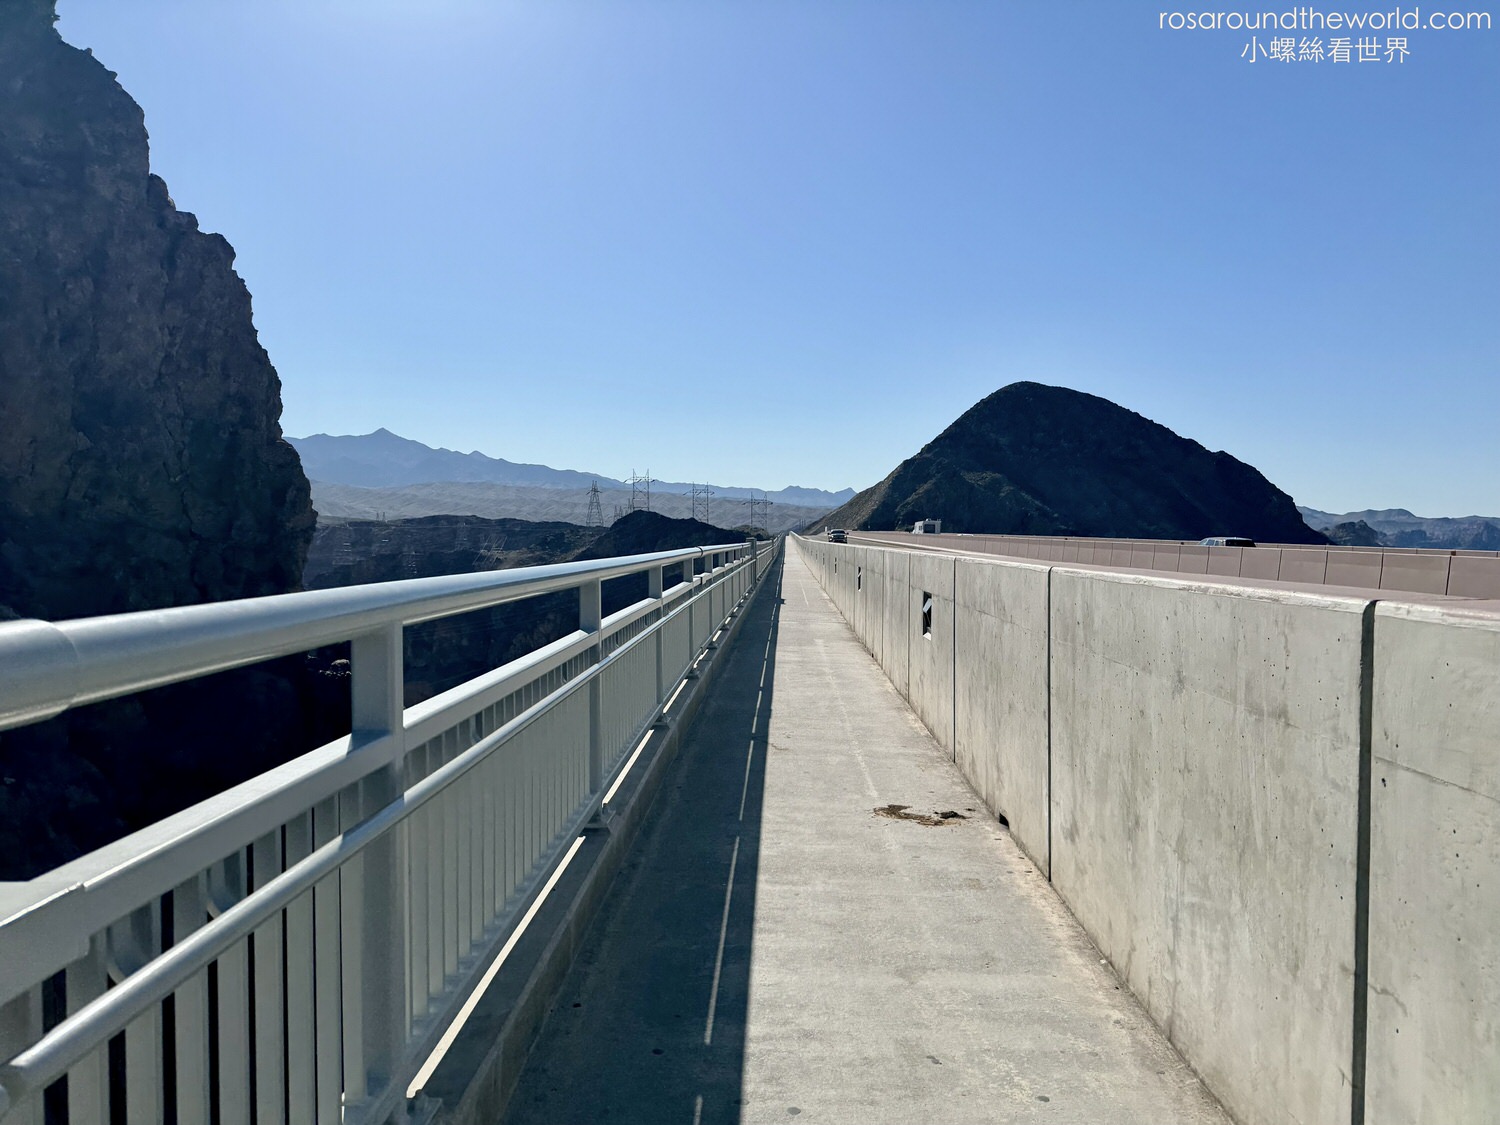 胡佛水壩 Hoover Dam
沙漠之鑽(Diamond on the desert)
美西公路旅遊
麥克帕特紀念大橋(Mike O’Callaghan-Pat Tillman Memorial Bridge)